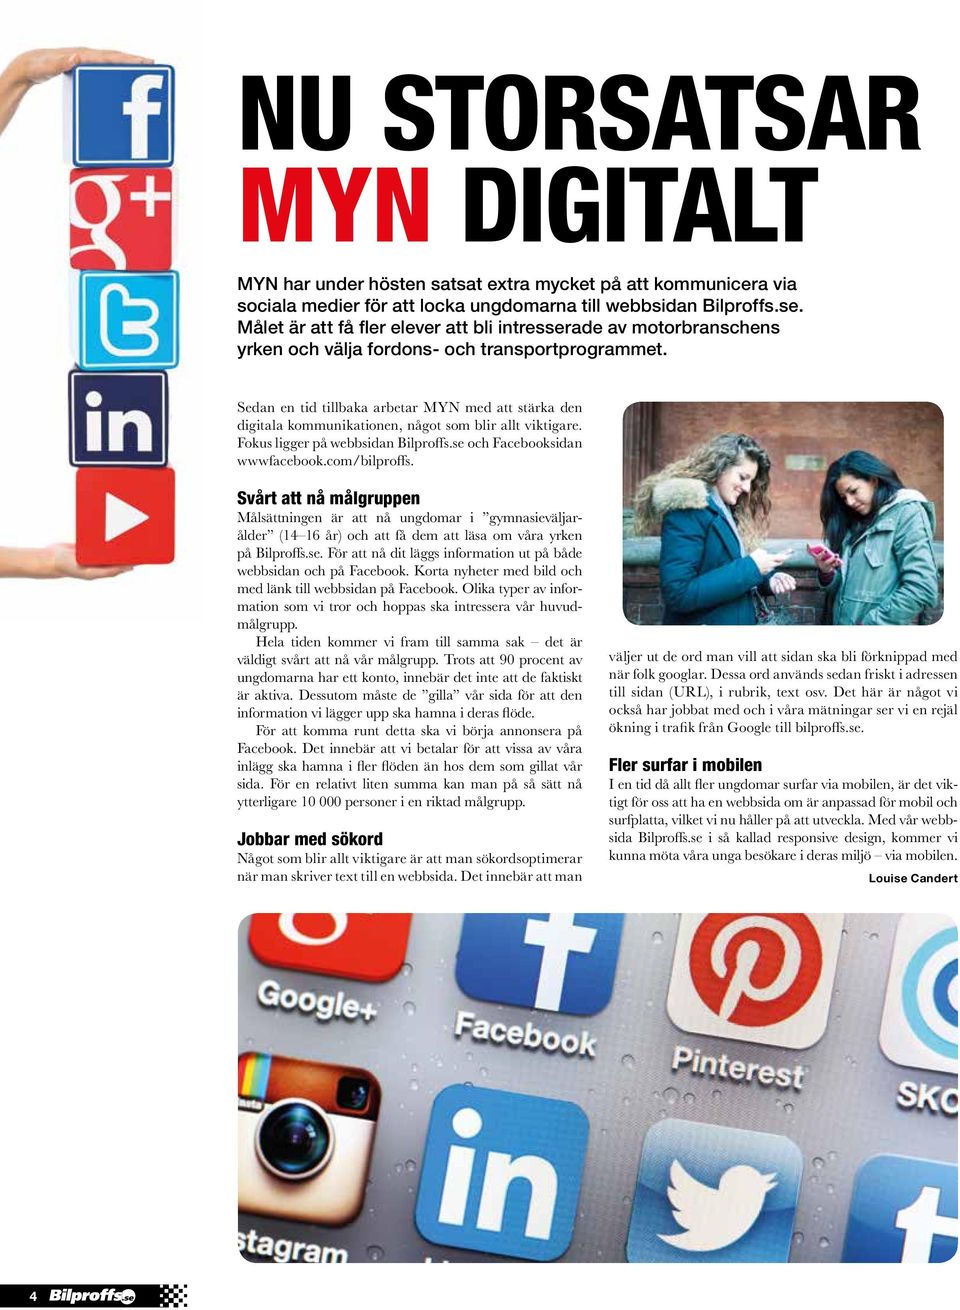 Sedan en tid tillbaka arbetar MYN med att stärka den digitala kommunikationen, något som blir allt viktigare. Fokus ligger på webbsidan Bilproffs.se och Facebooksidan wwwfacebook.com/bilproffs.